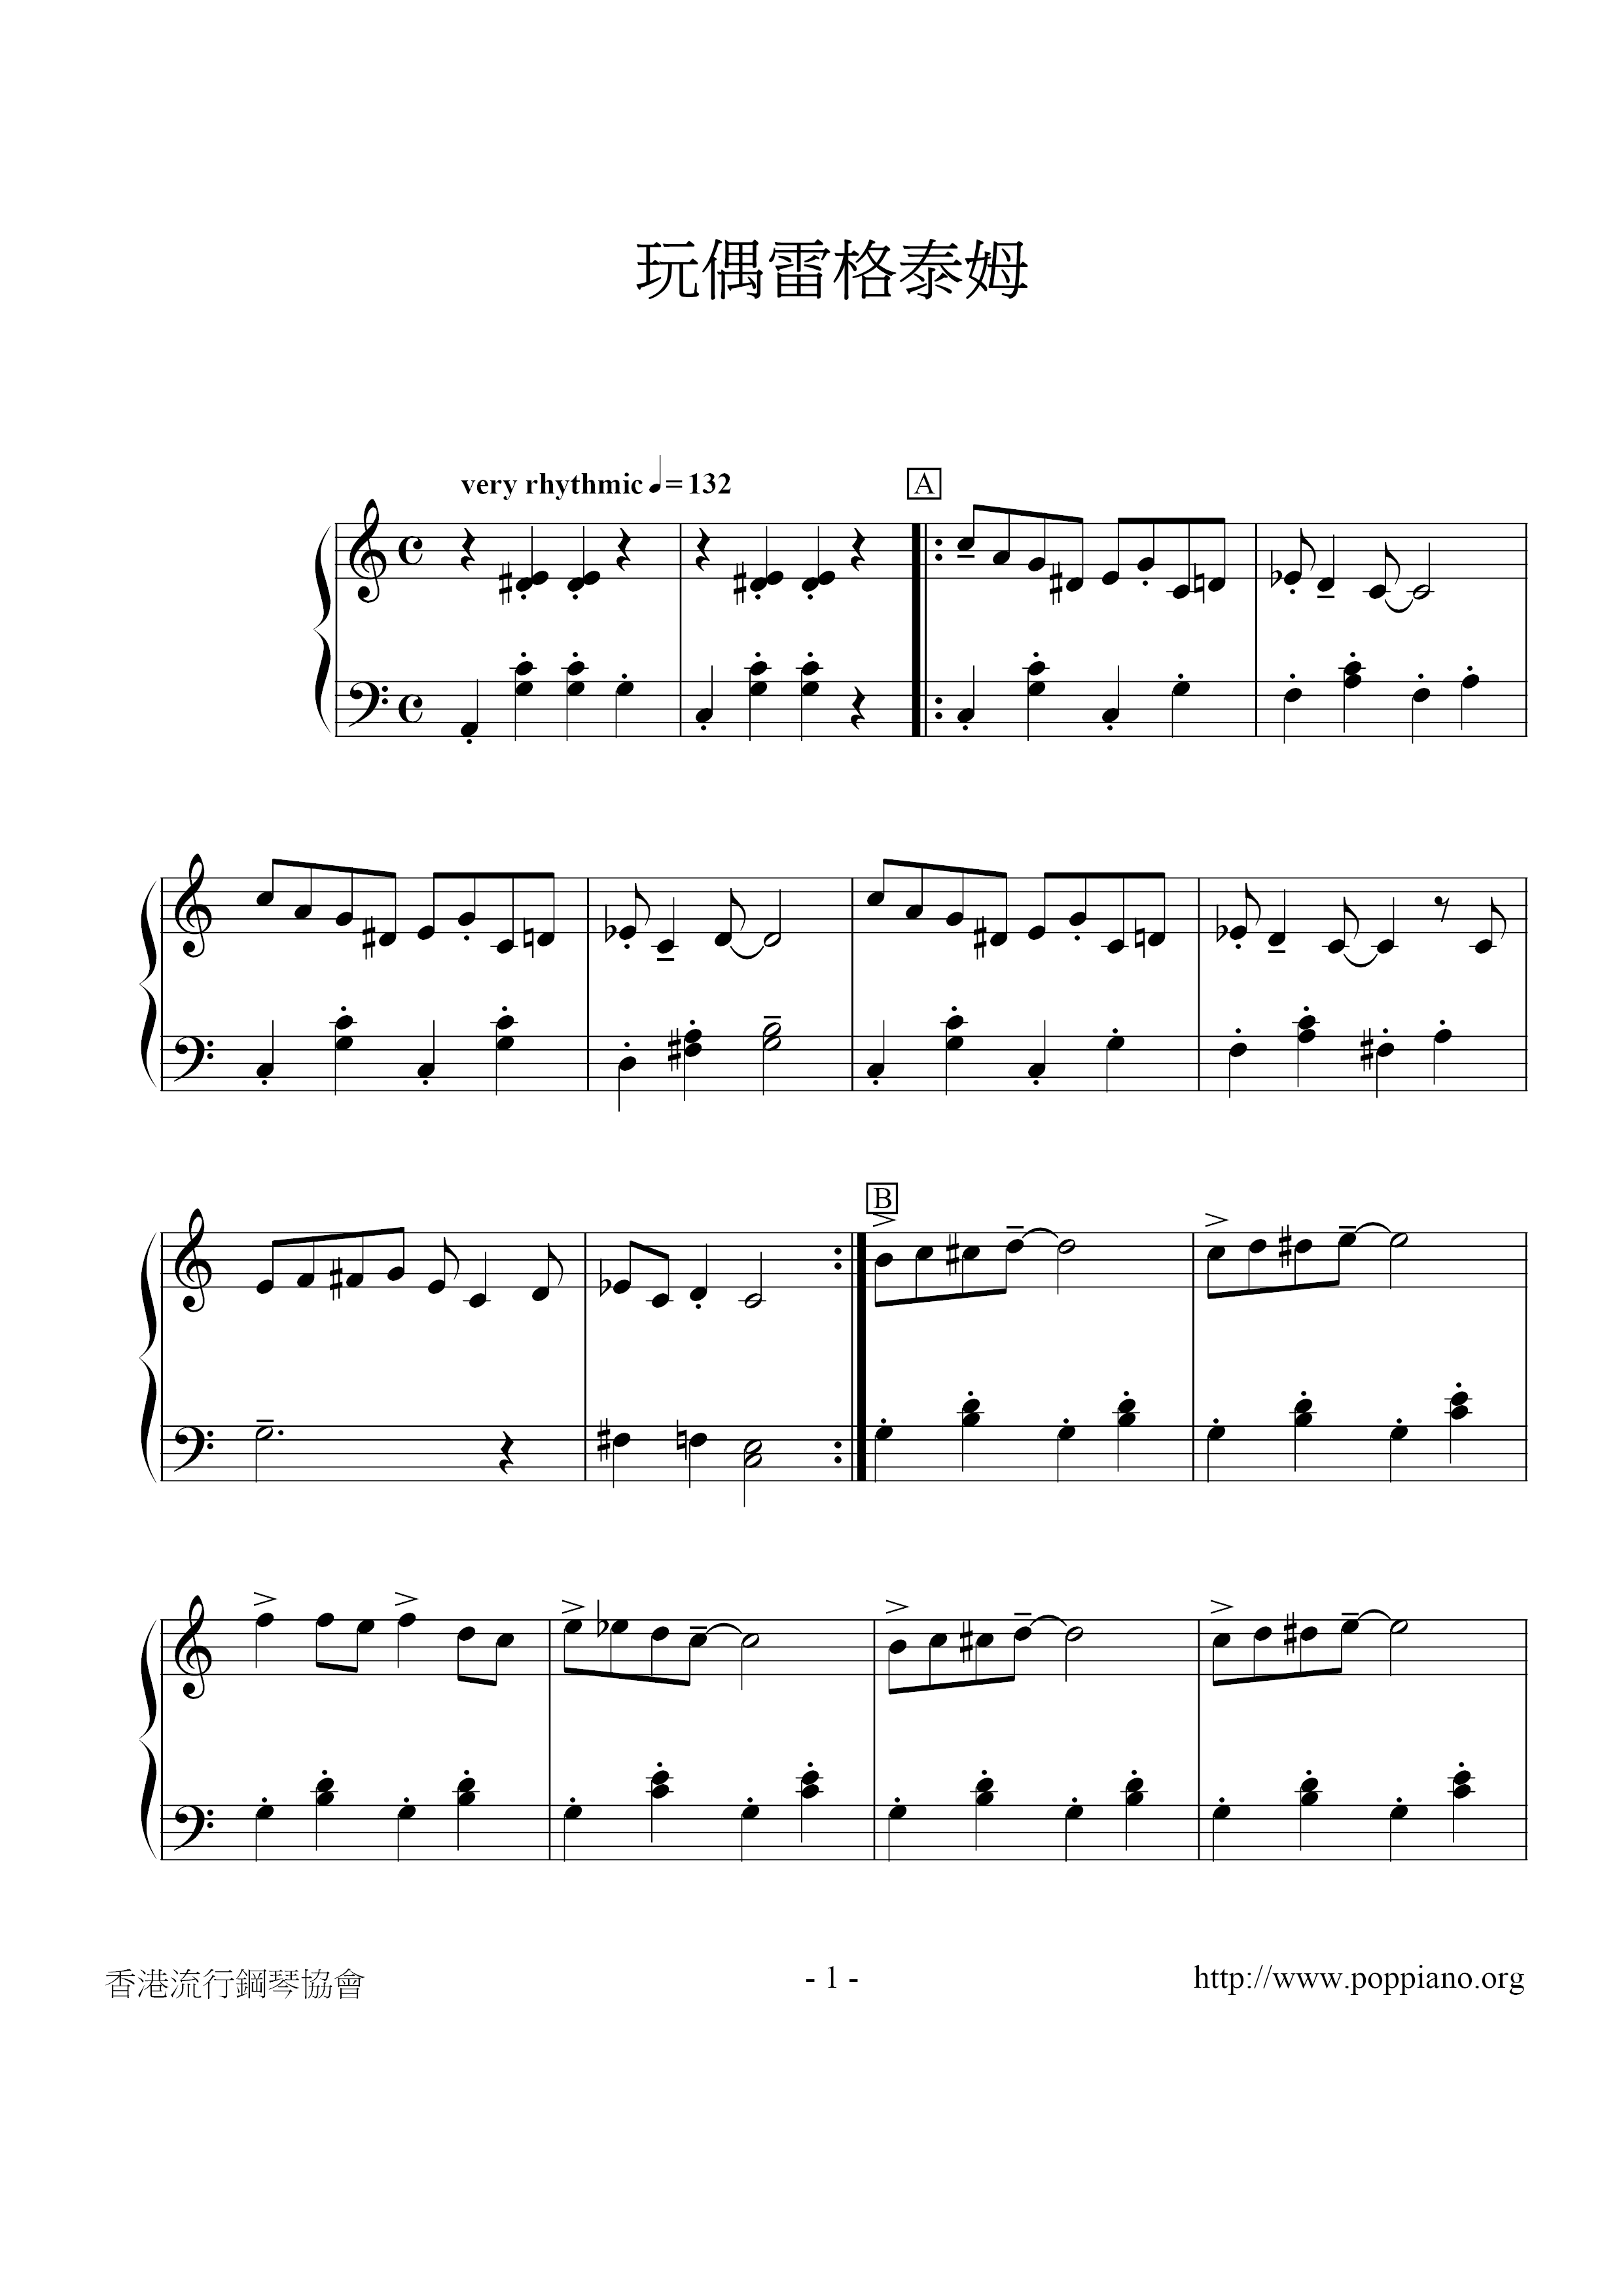 Op38-5 Doll Reg Tam Score